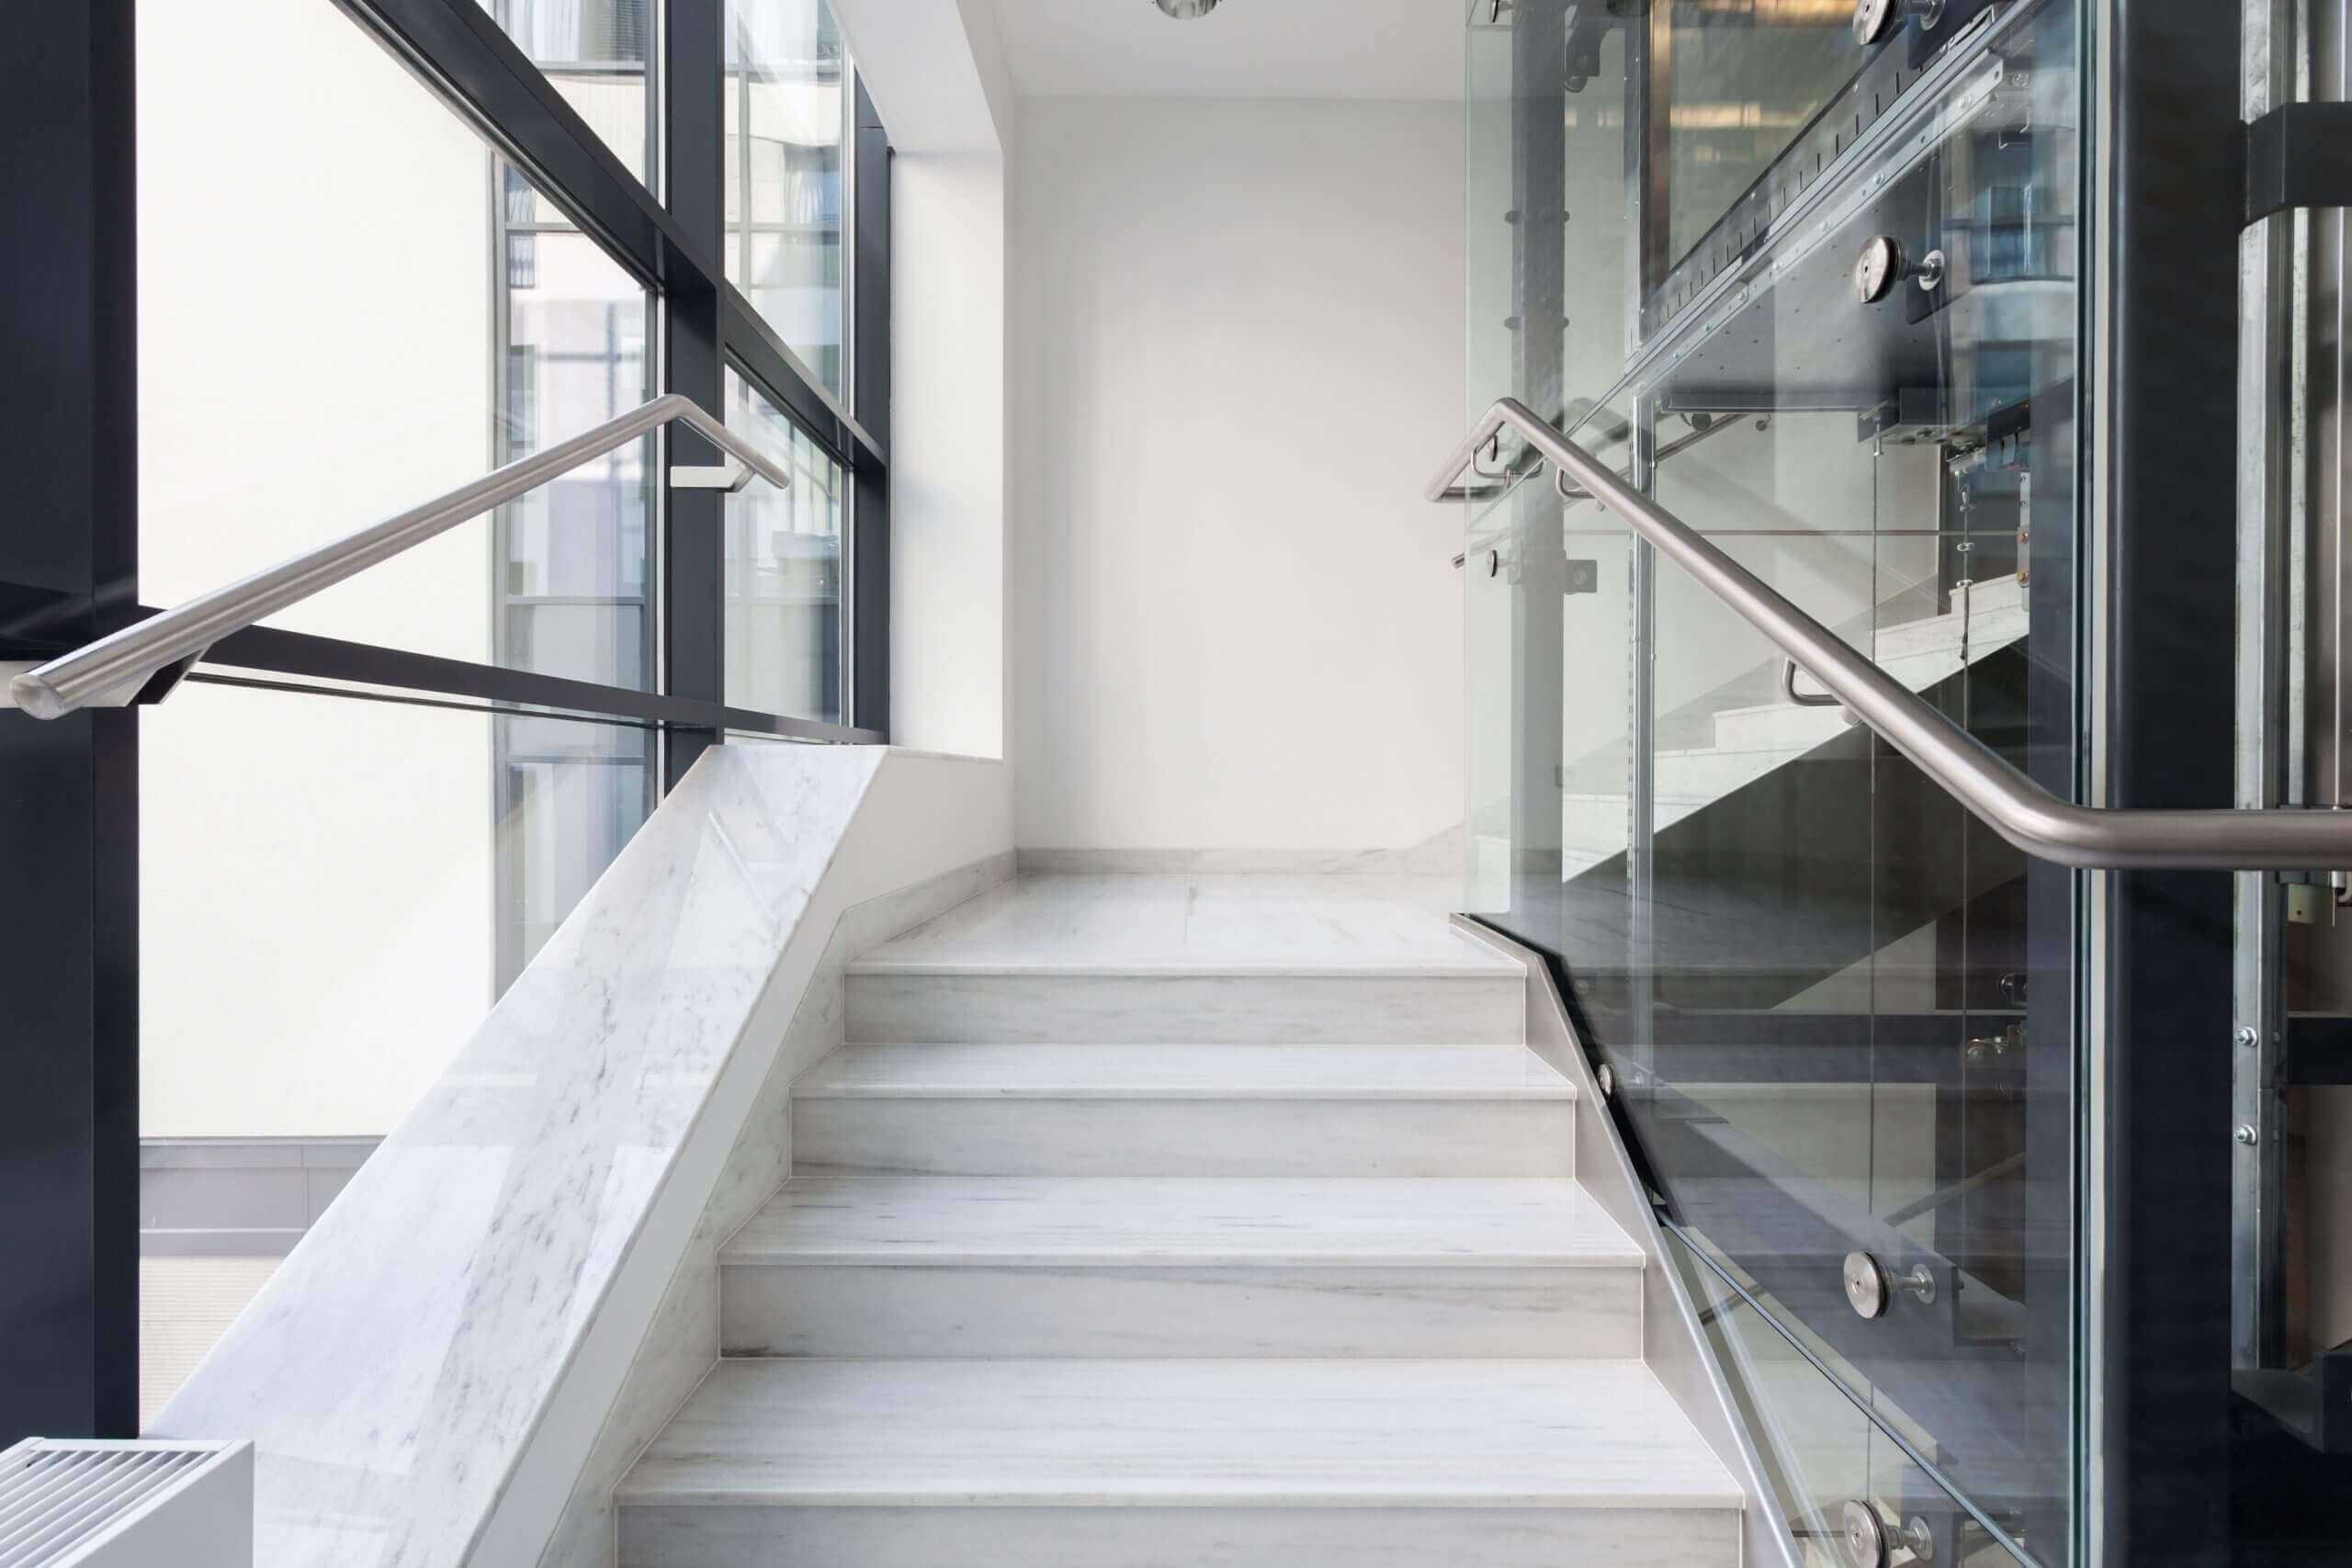 Pisos para Escaleras de Concreto en Interior de calidad | Crest